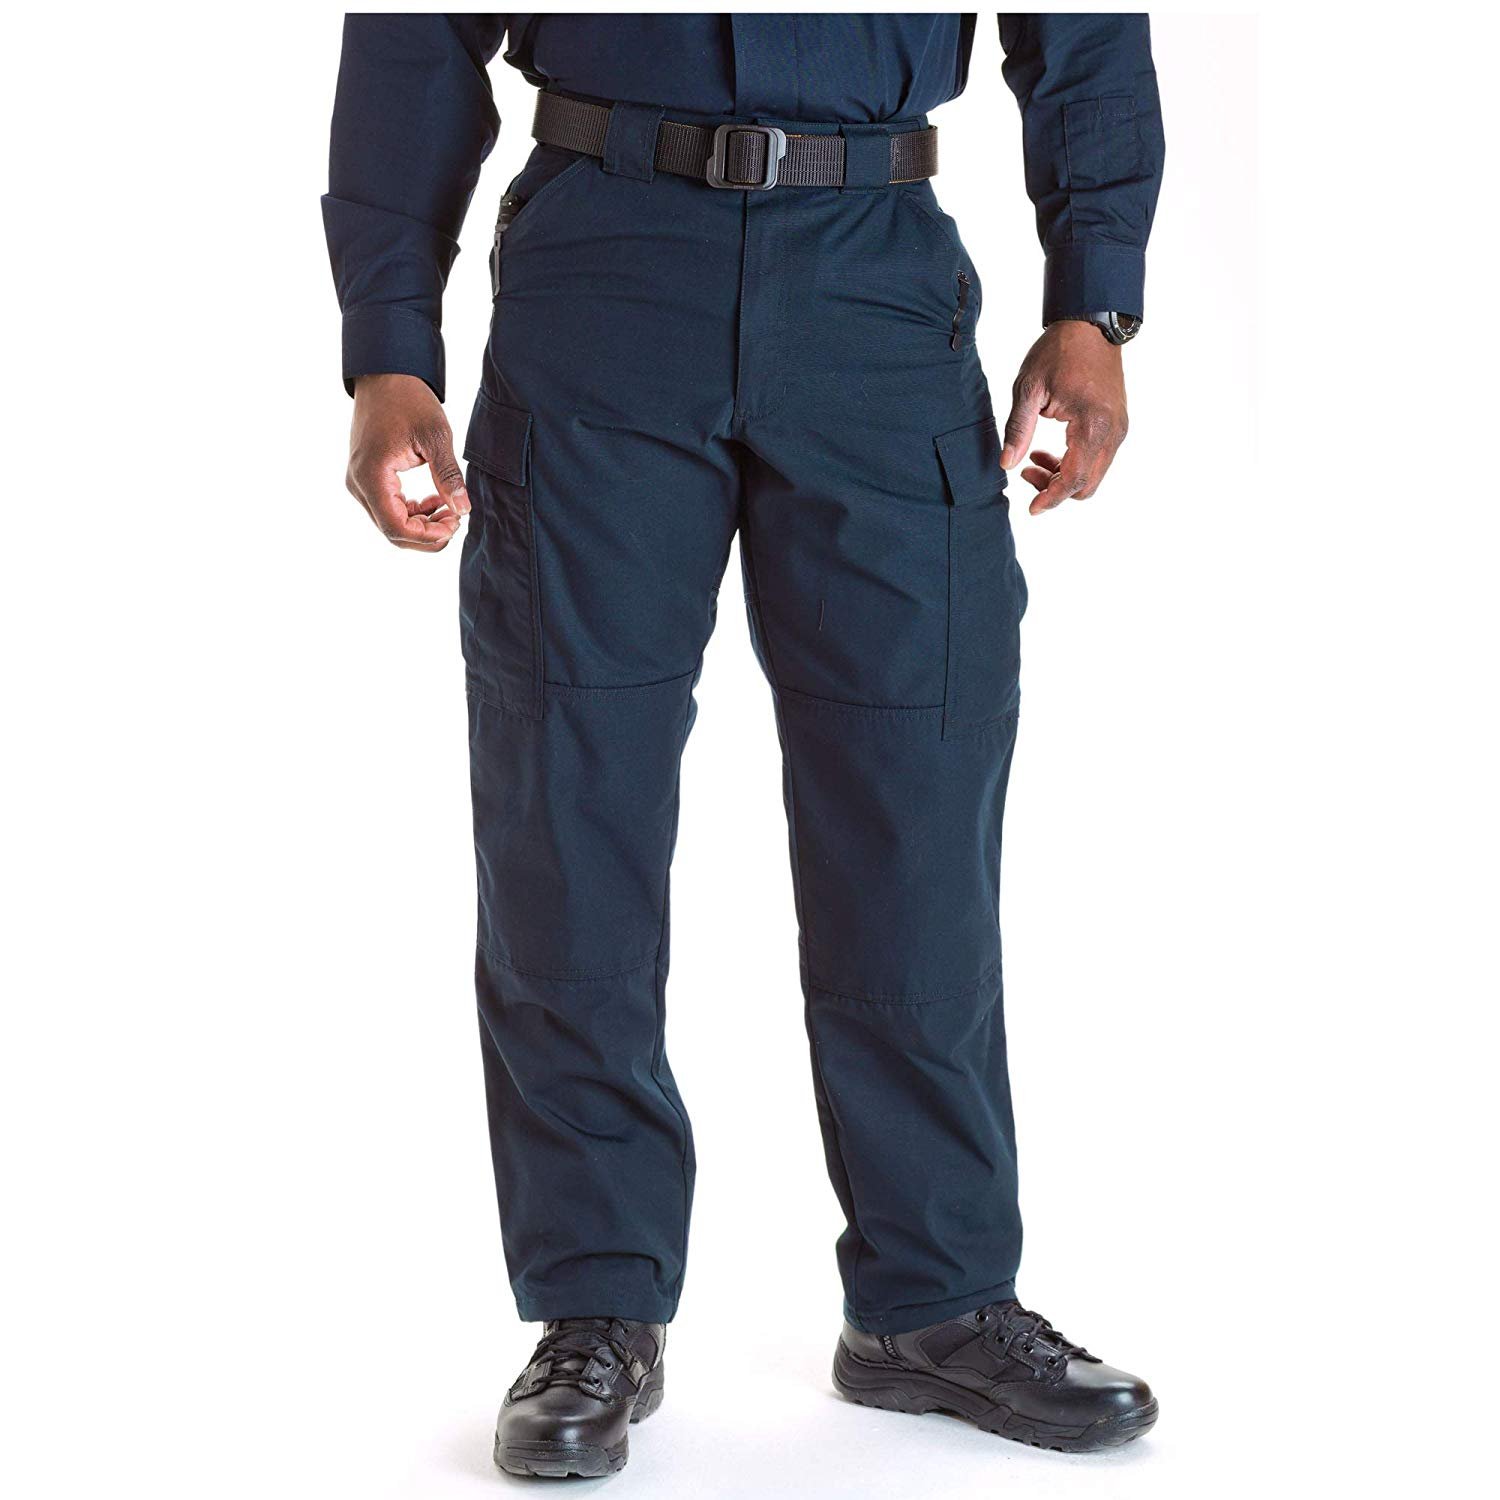 Security Uniform Pants | Security Uniforms | Waitstuff Uniforms